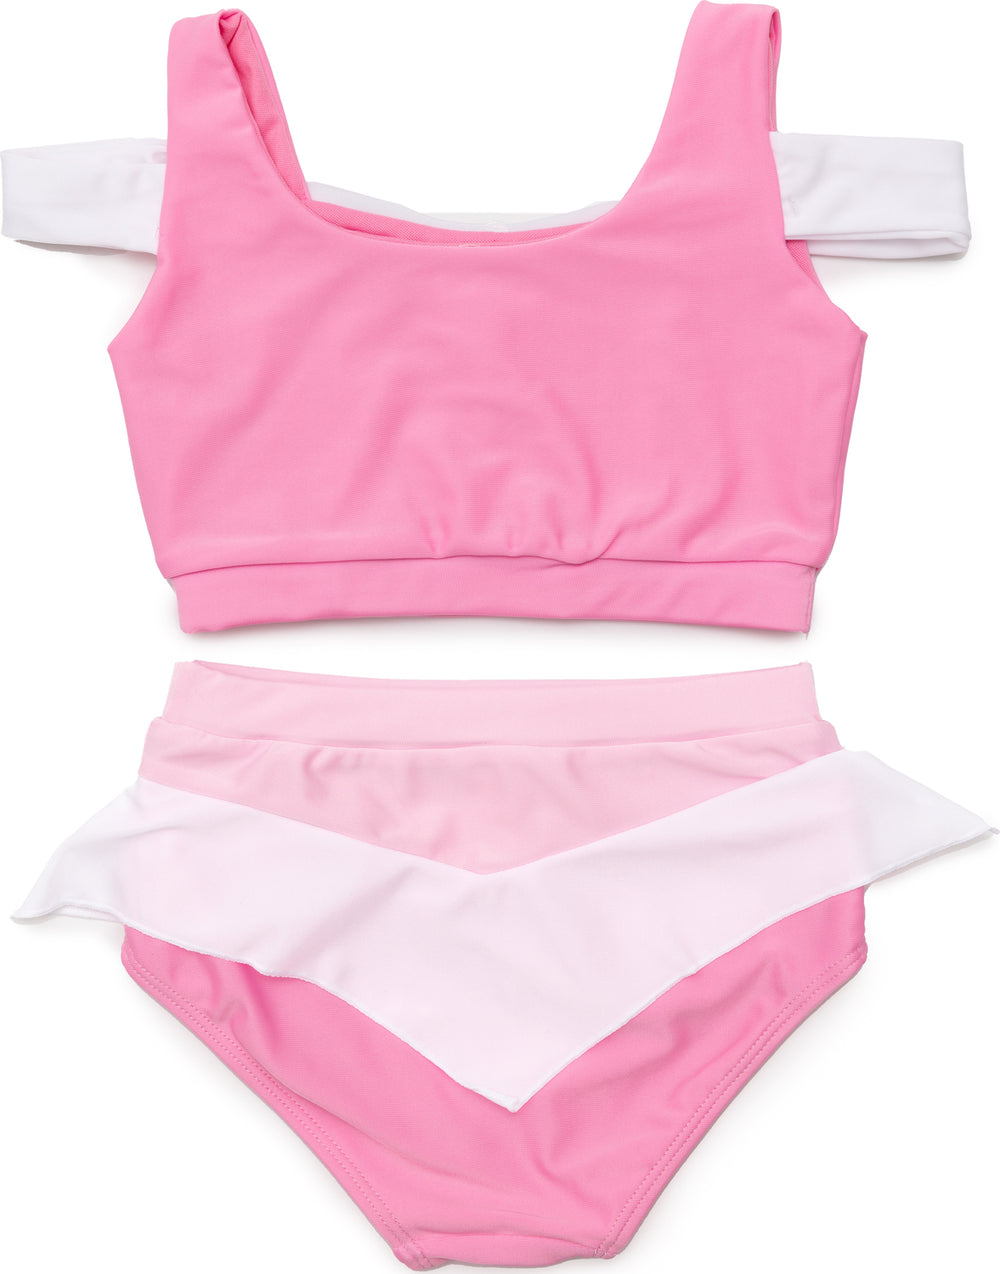 Sleeping Cutie Swim Suit, Two-Piece (Size 5-6)